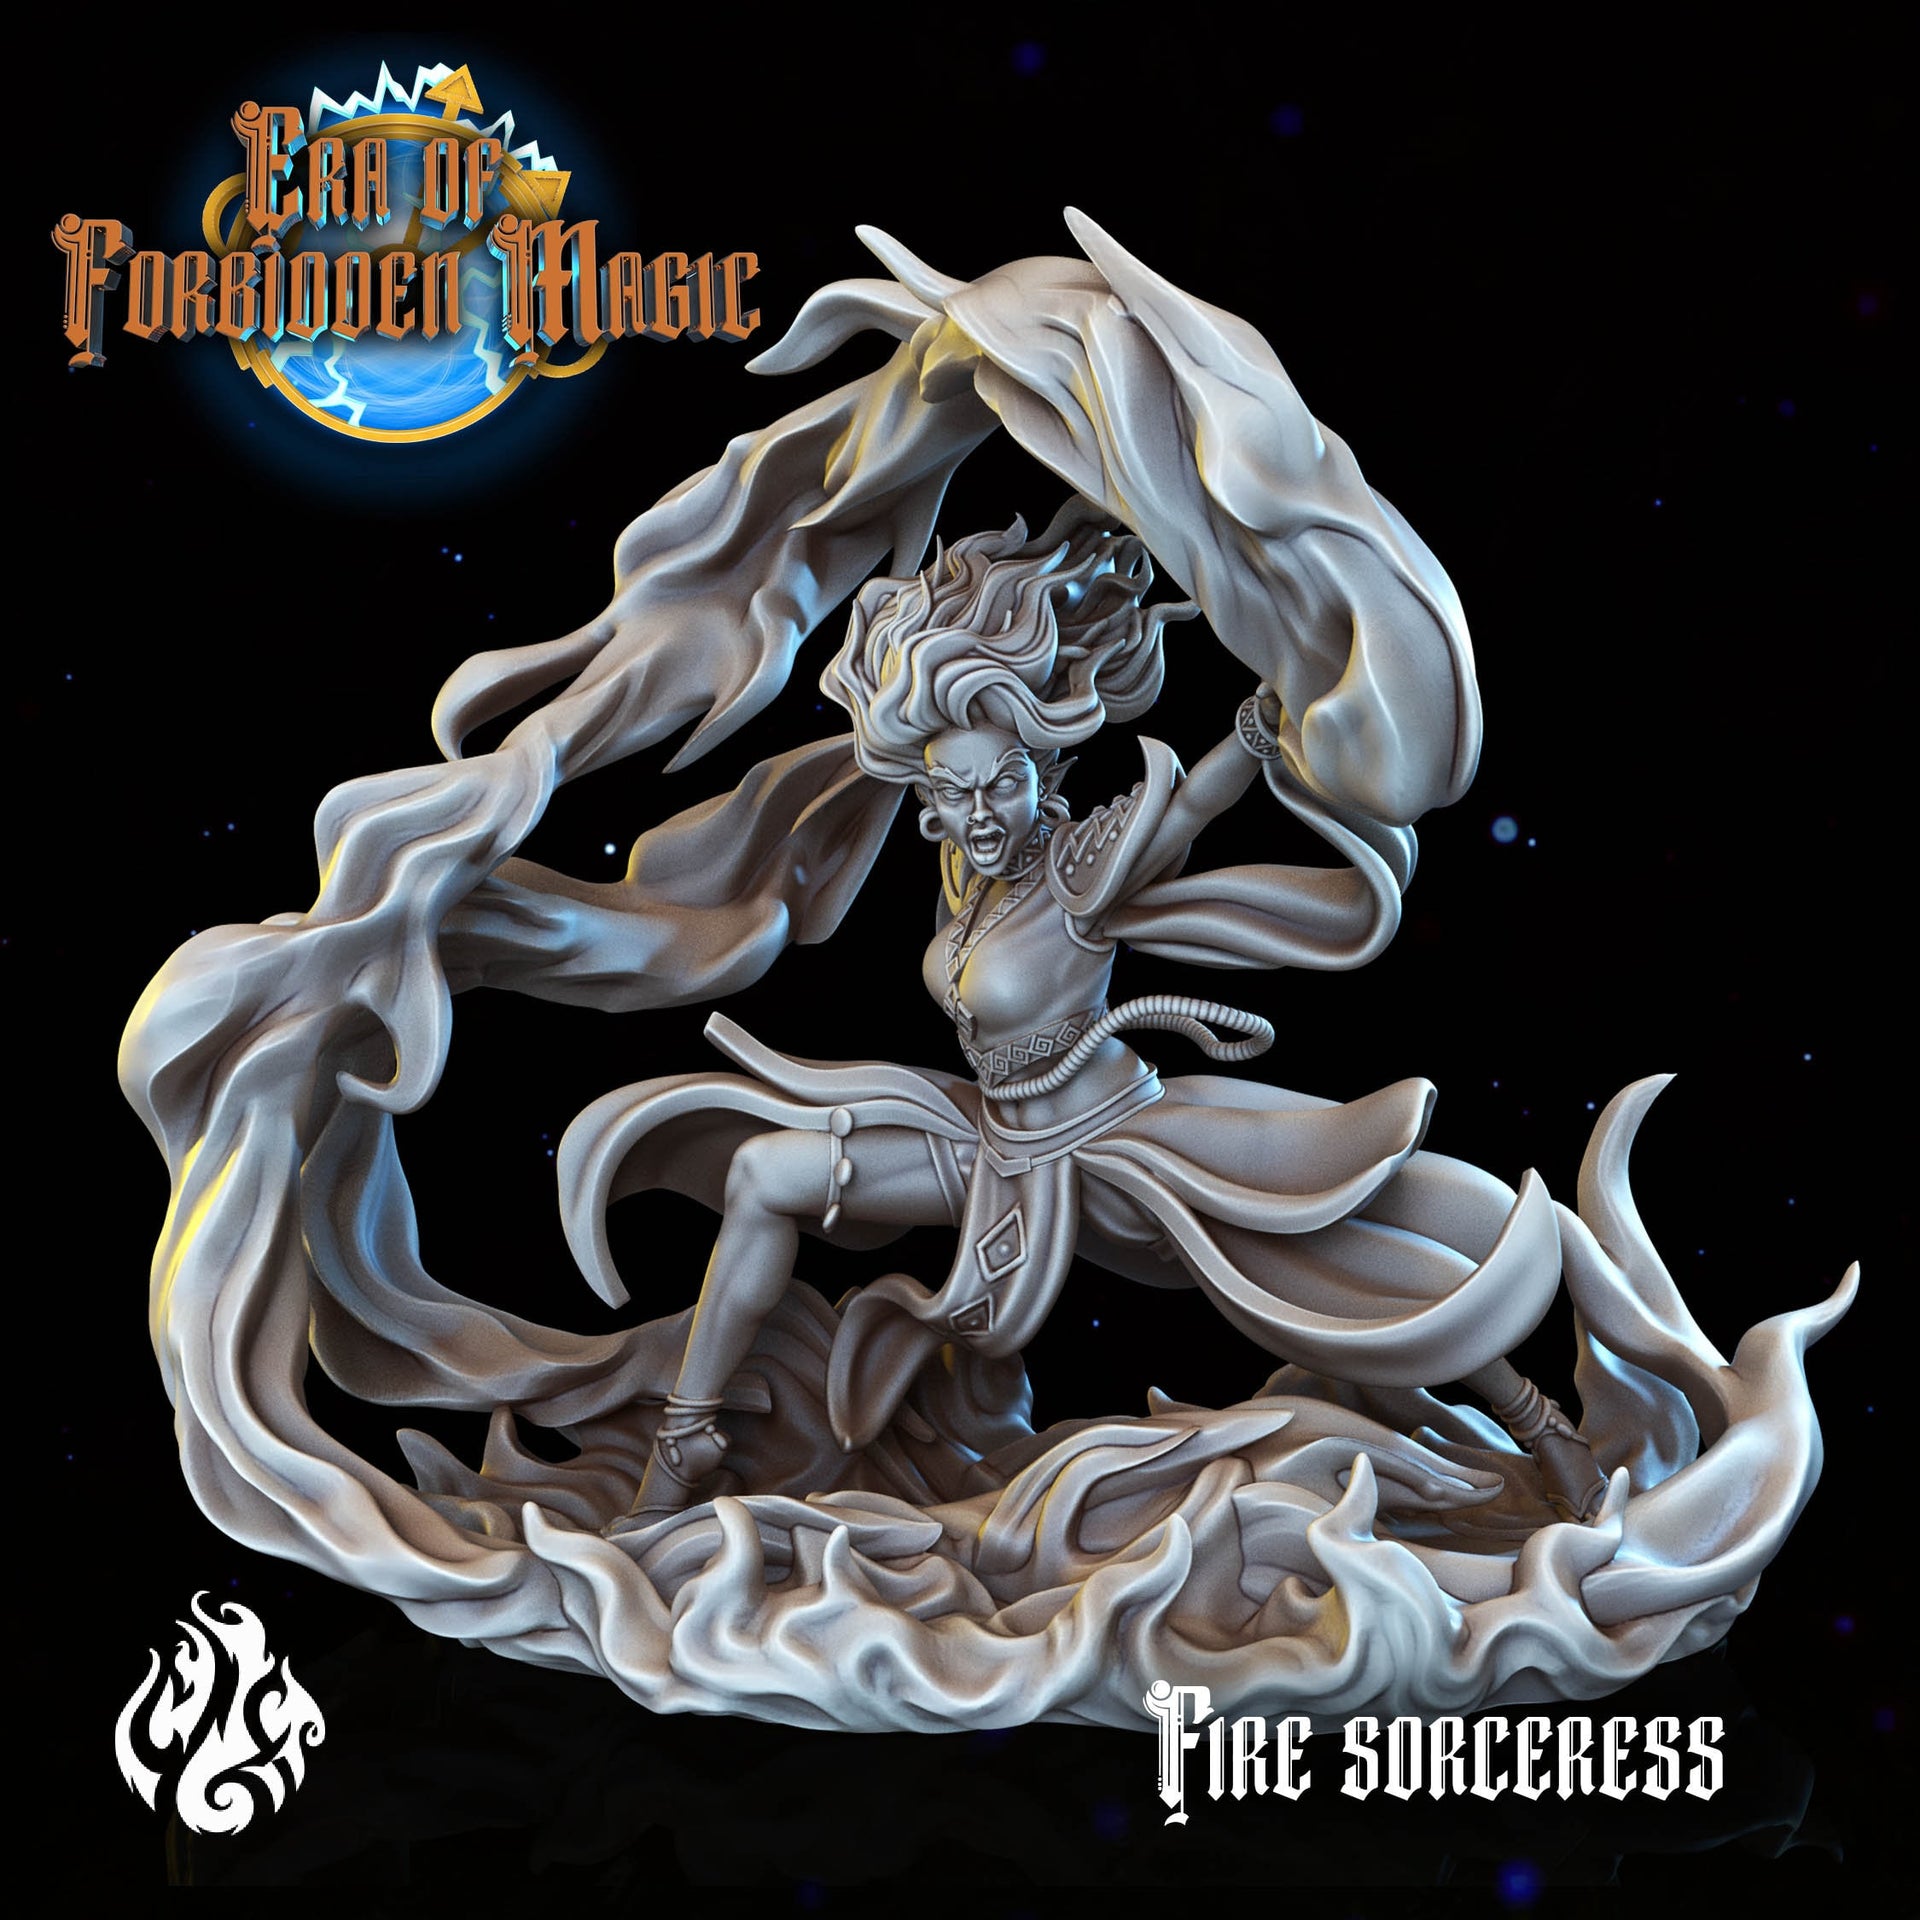 Fire Sorceress - Crippled God Foundry - Era of Forbidden Magic